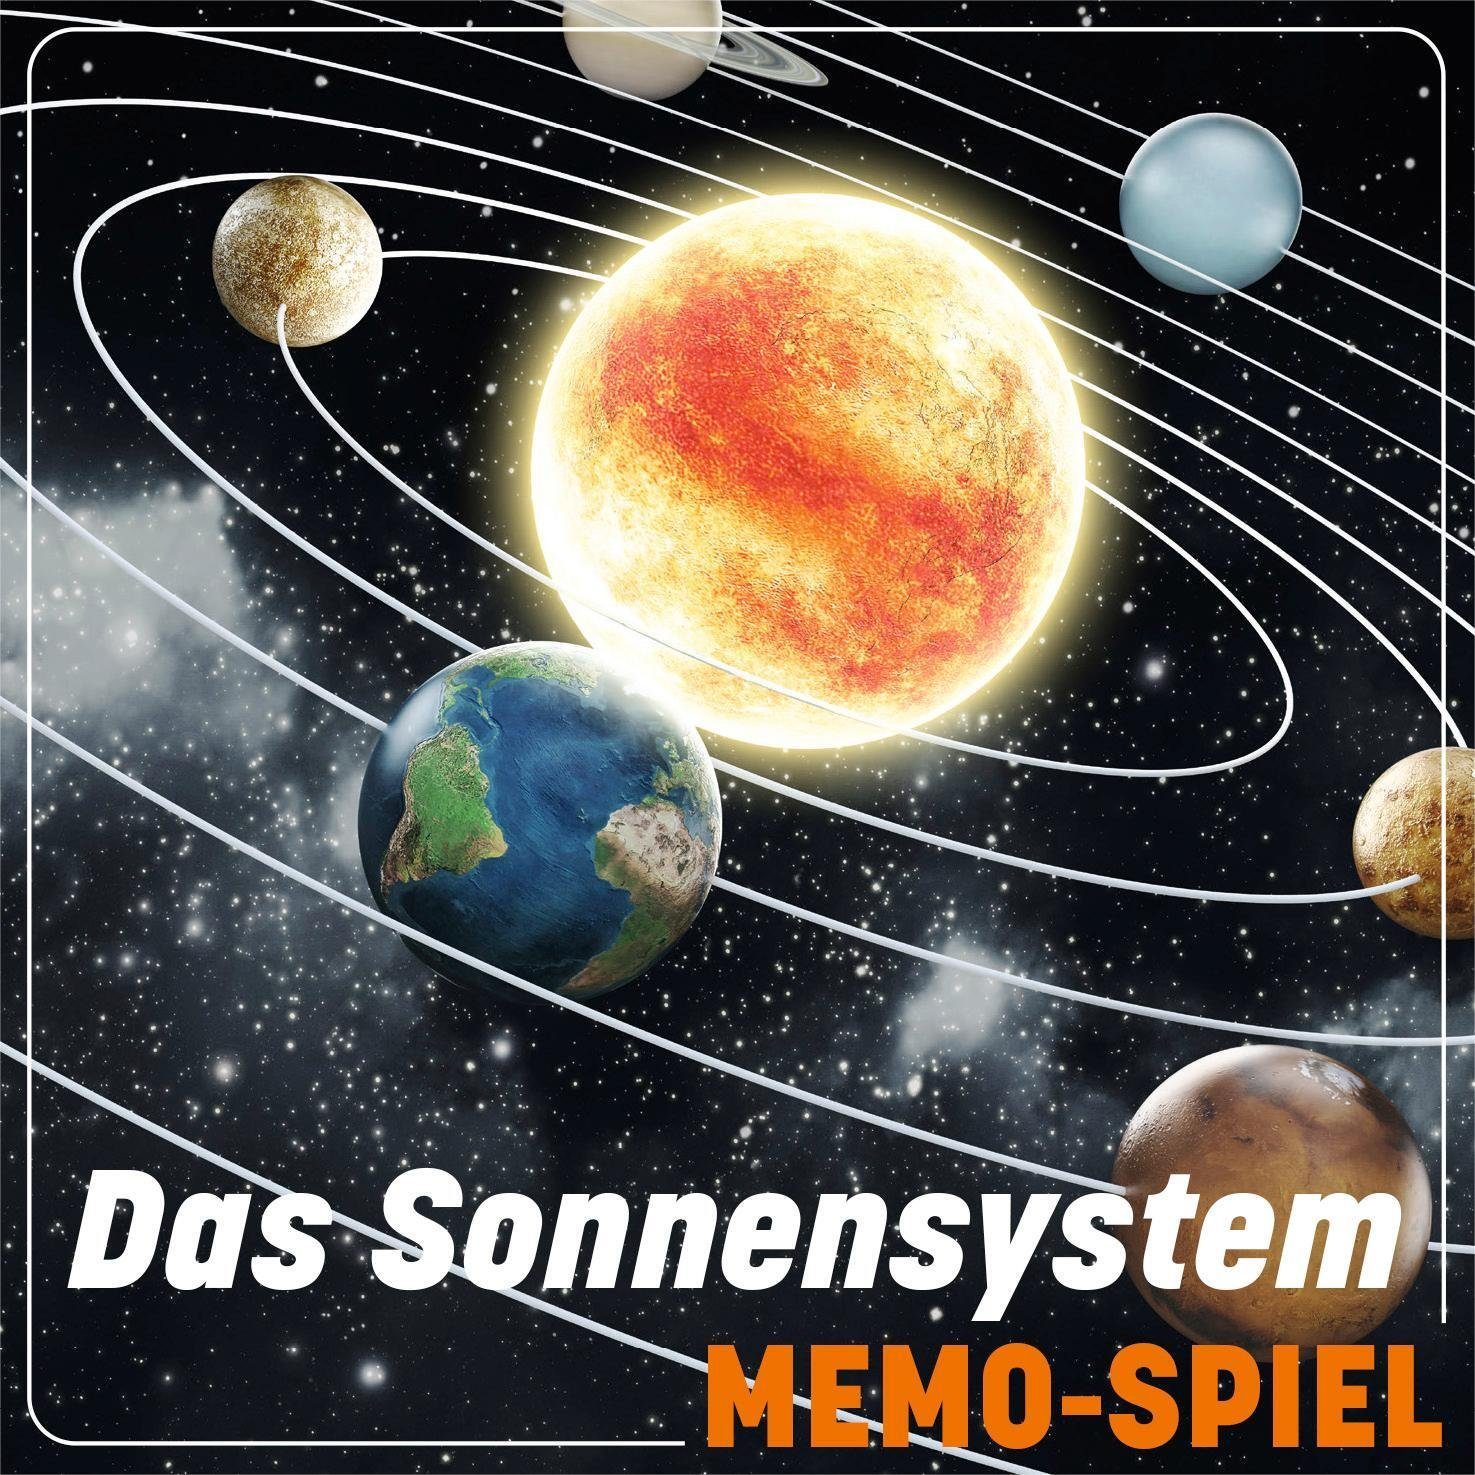 Spiel, Unser Memo-Spiel Das Sonnensystem Planeten und - Sterne 